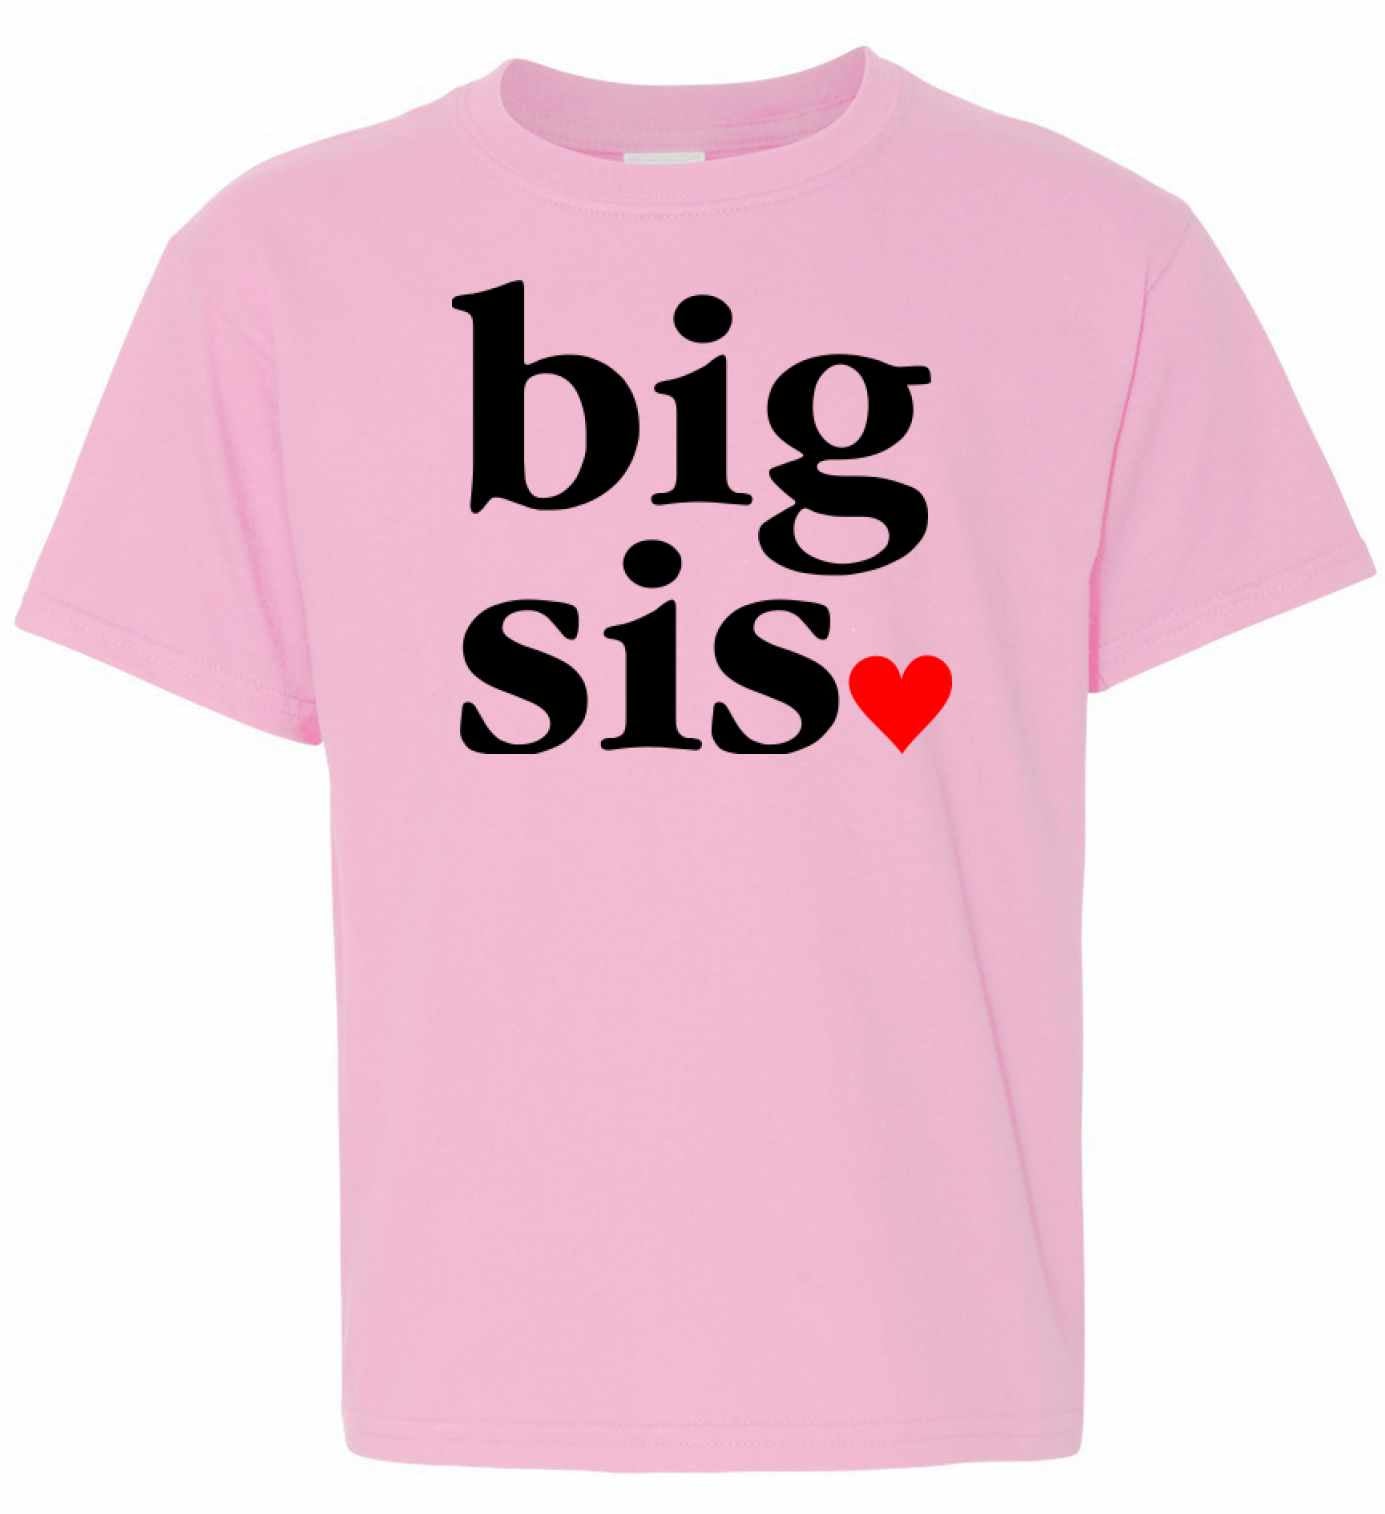 Big Sis, Big Sister on Kids T-Shirt (#985-201)